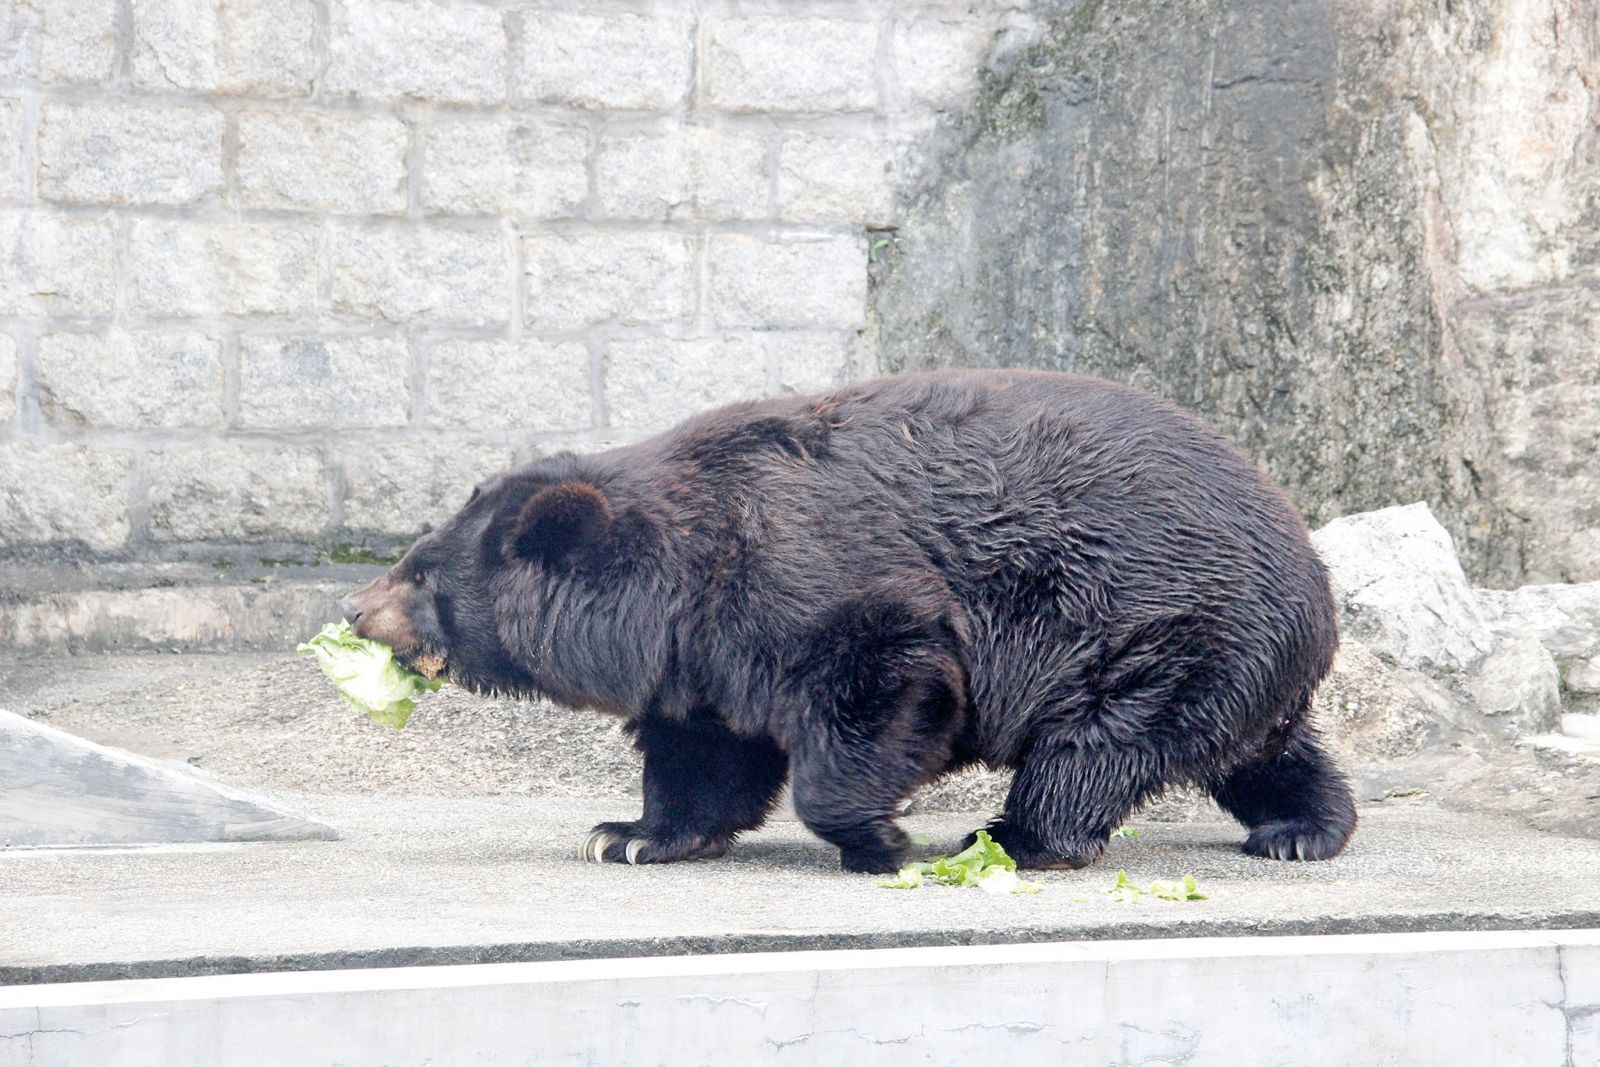 黑熊「BoBo」健康明顯轉差